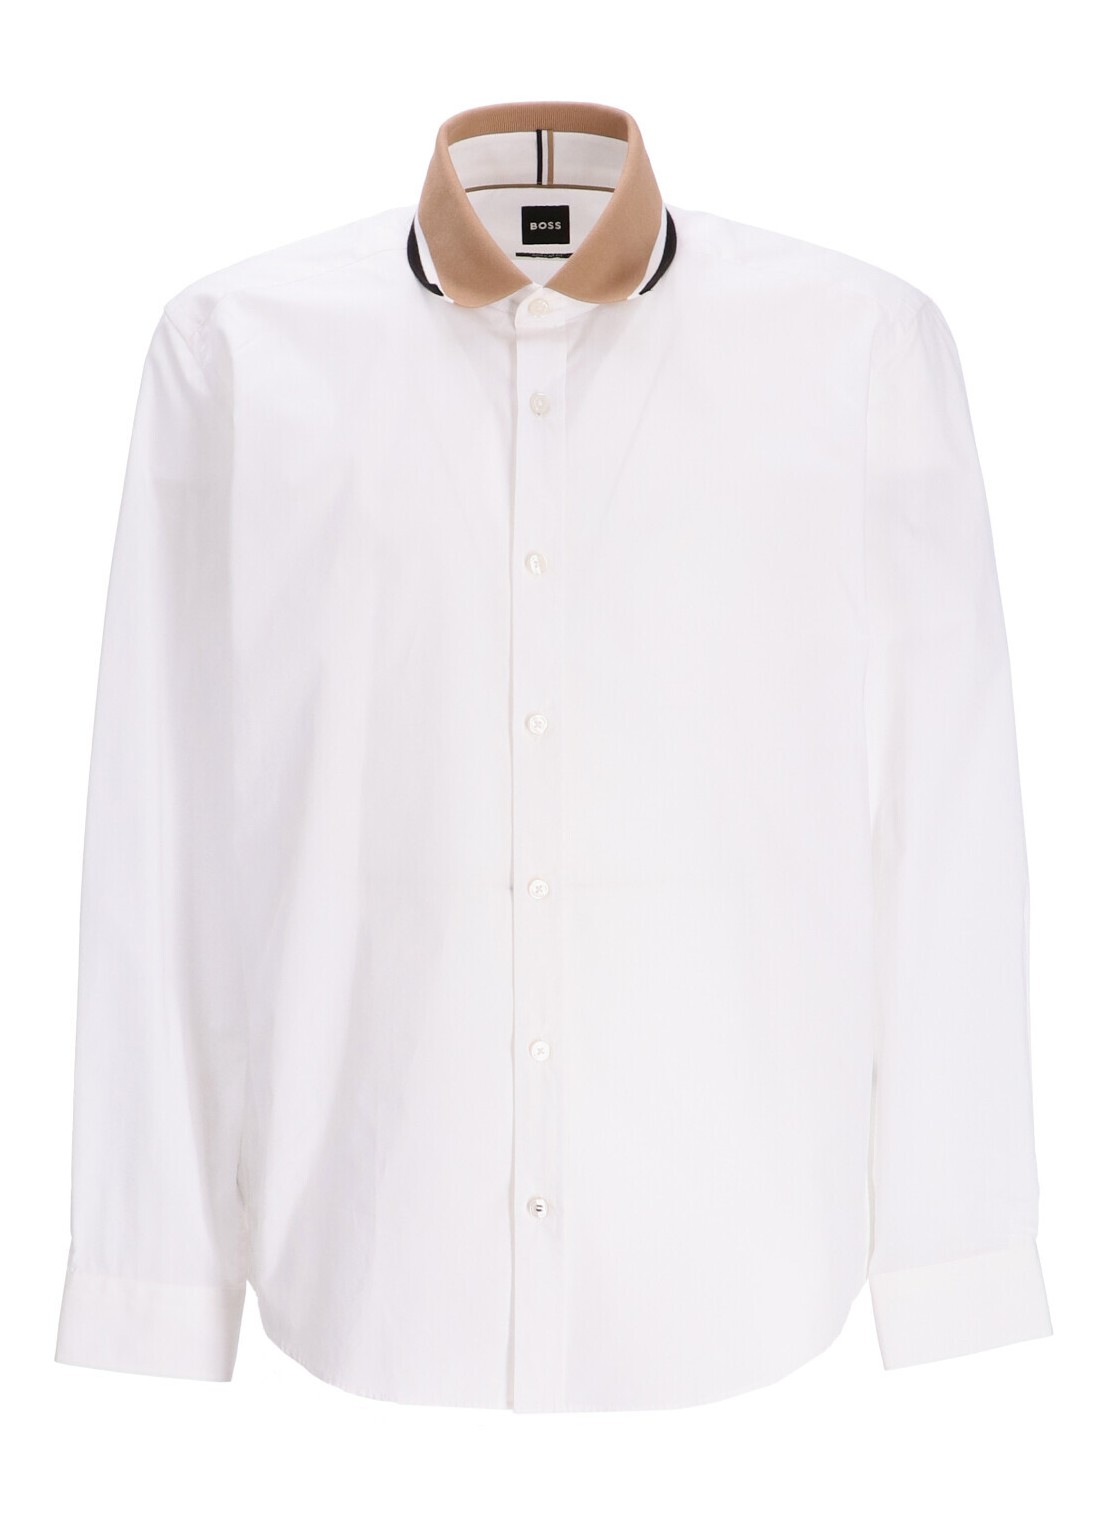 Camiseria boss shirt man s-liam-polo 50509176 100 talla XL
 